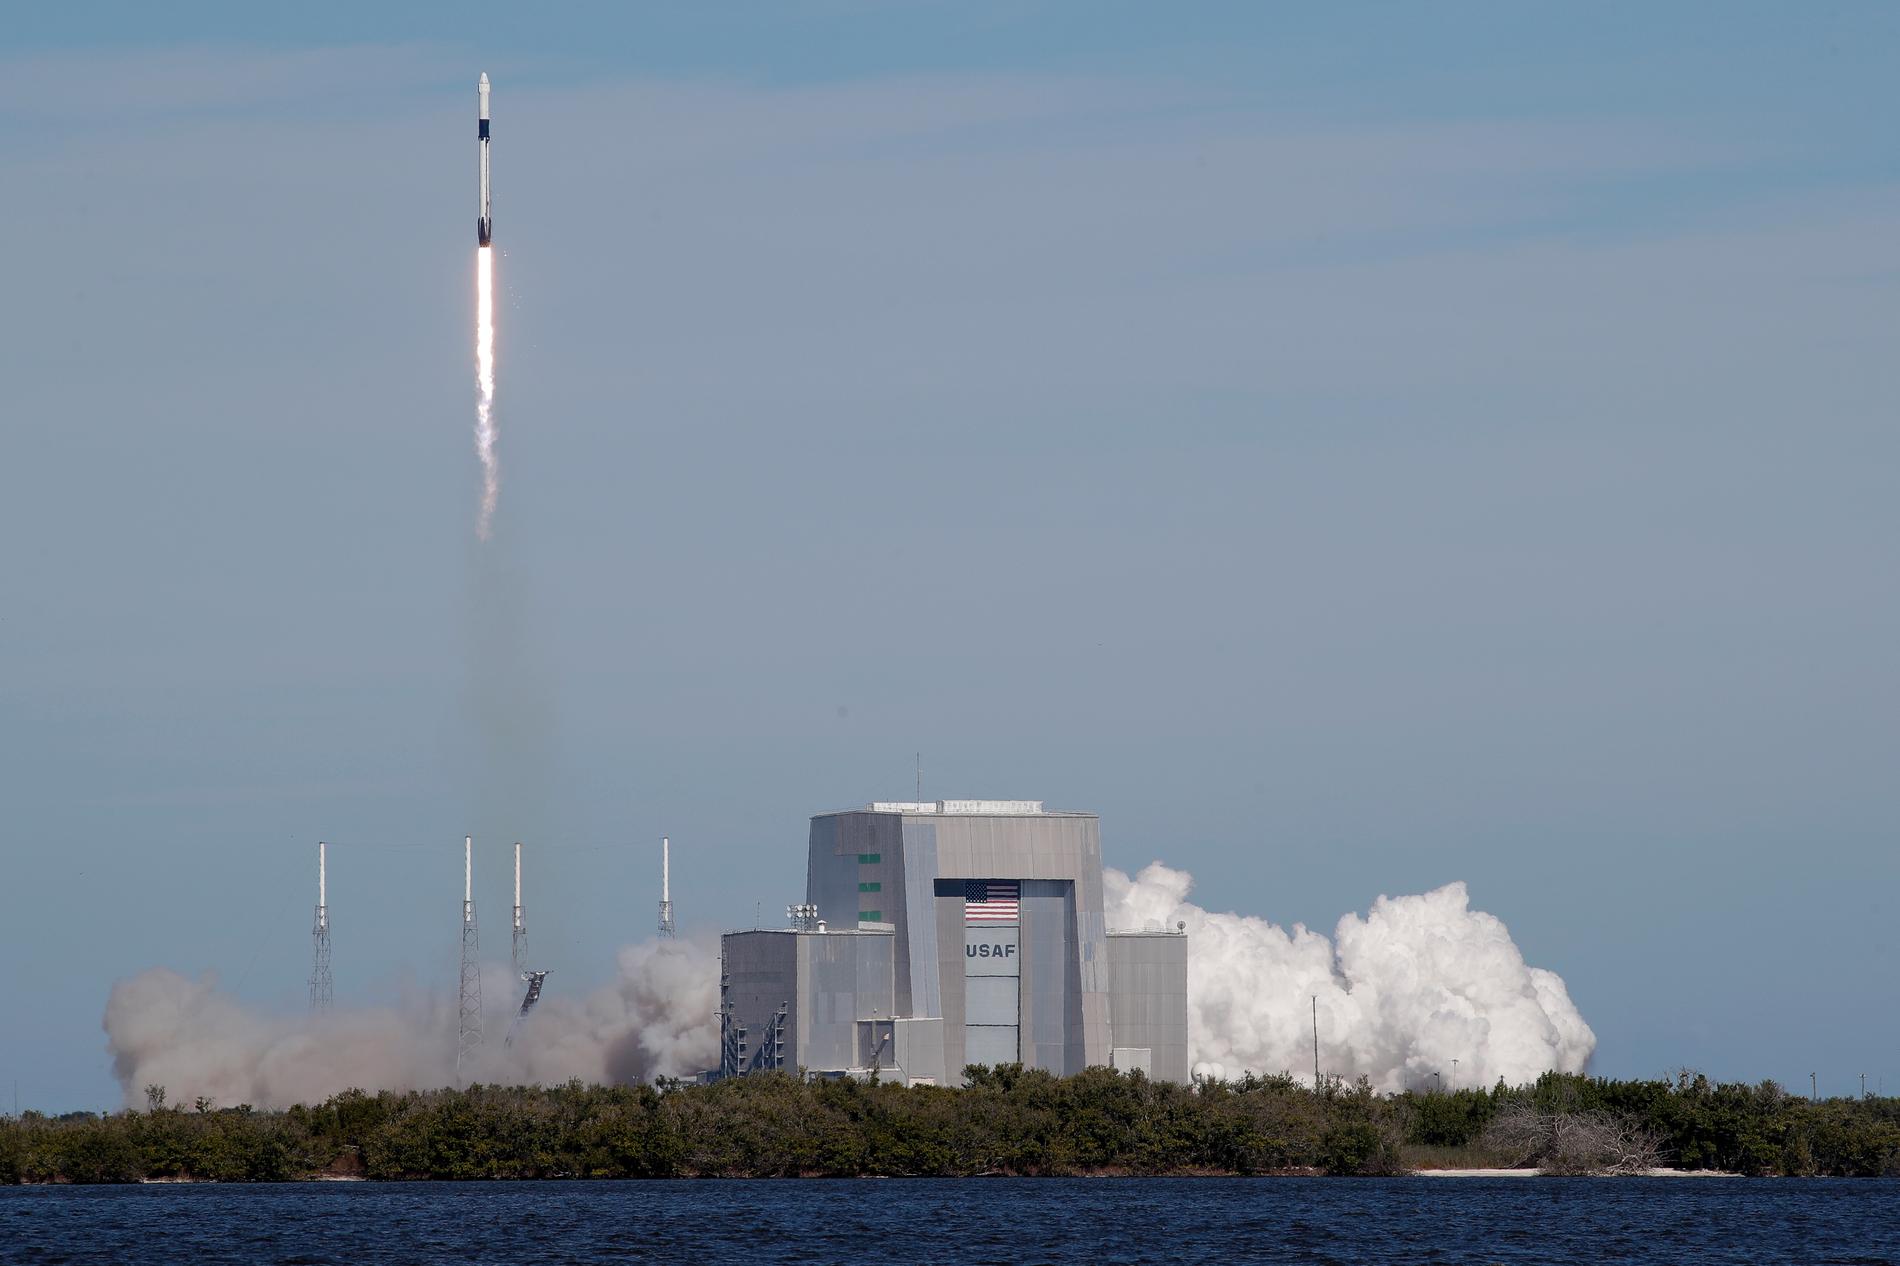 Den israeliska rymdfarkosten Beresheet kommer att skjutas upp från Cape Canaveral på en Falcon 9-raket. Här lyfter en raket för en leverans till den internationella rymdstationen ISS. Arkivbild.